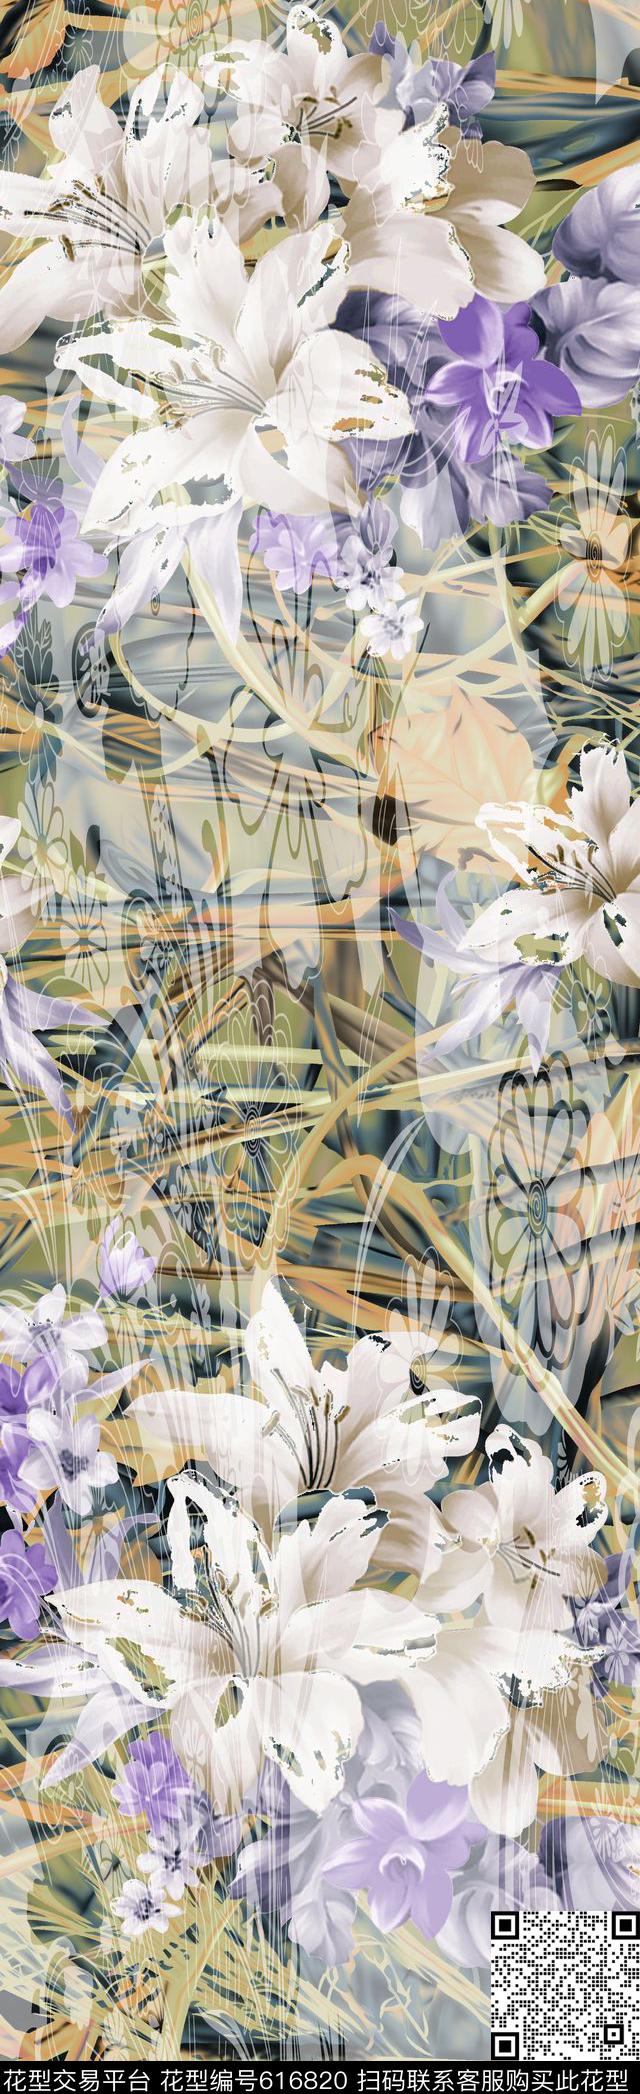 002.jpg - 616820 - 抽象花卉 抽象图案 抽象长巾 - 数码印花花型 － 长巾花型设计 － 瓦栏